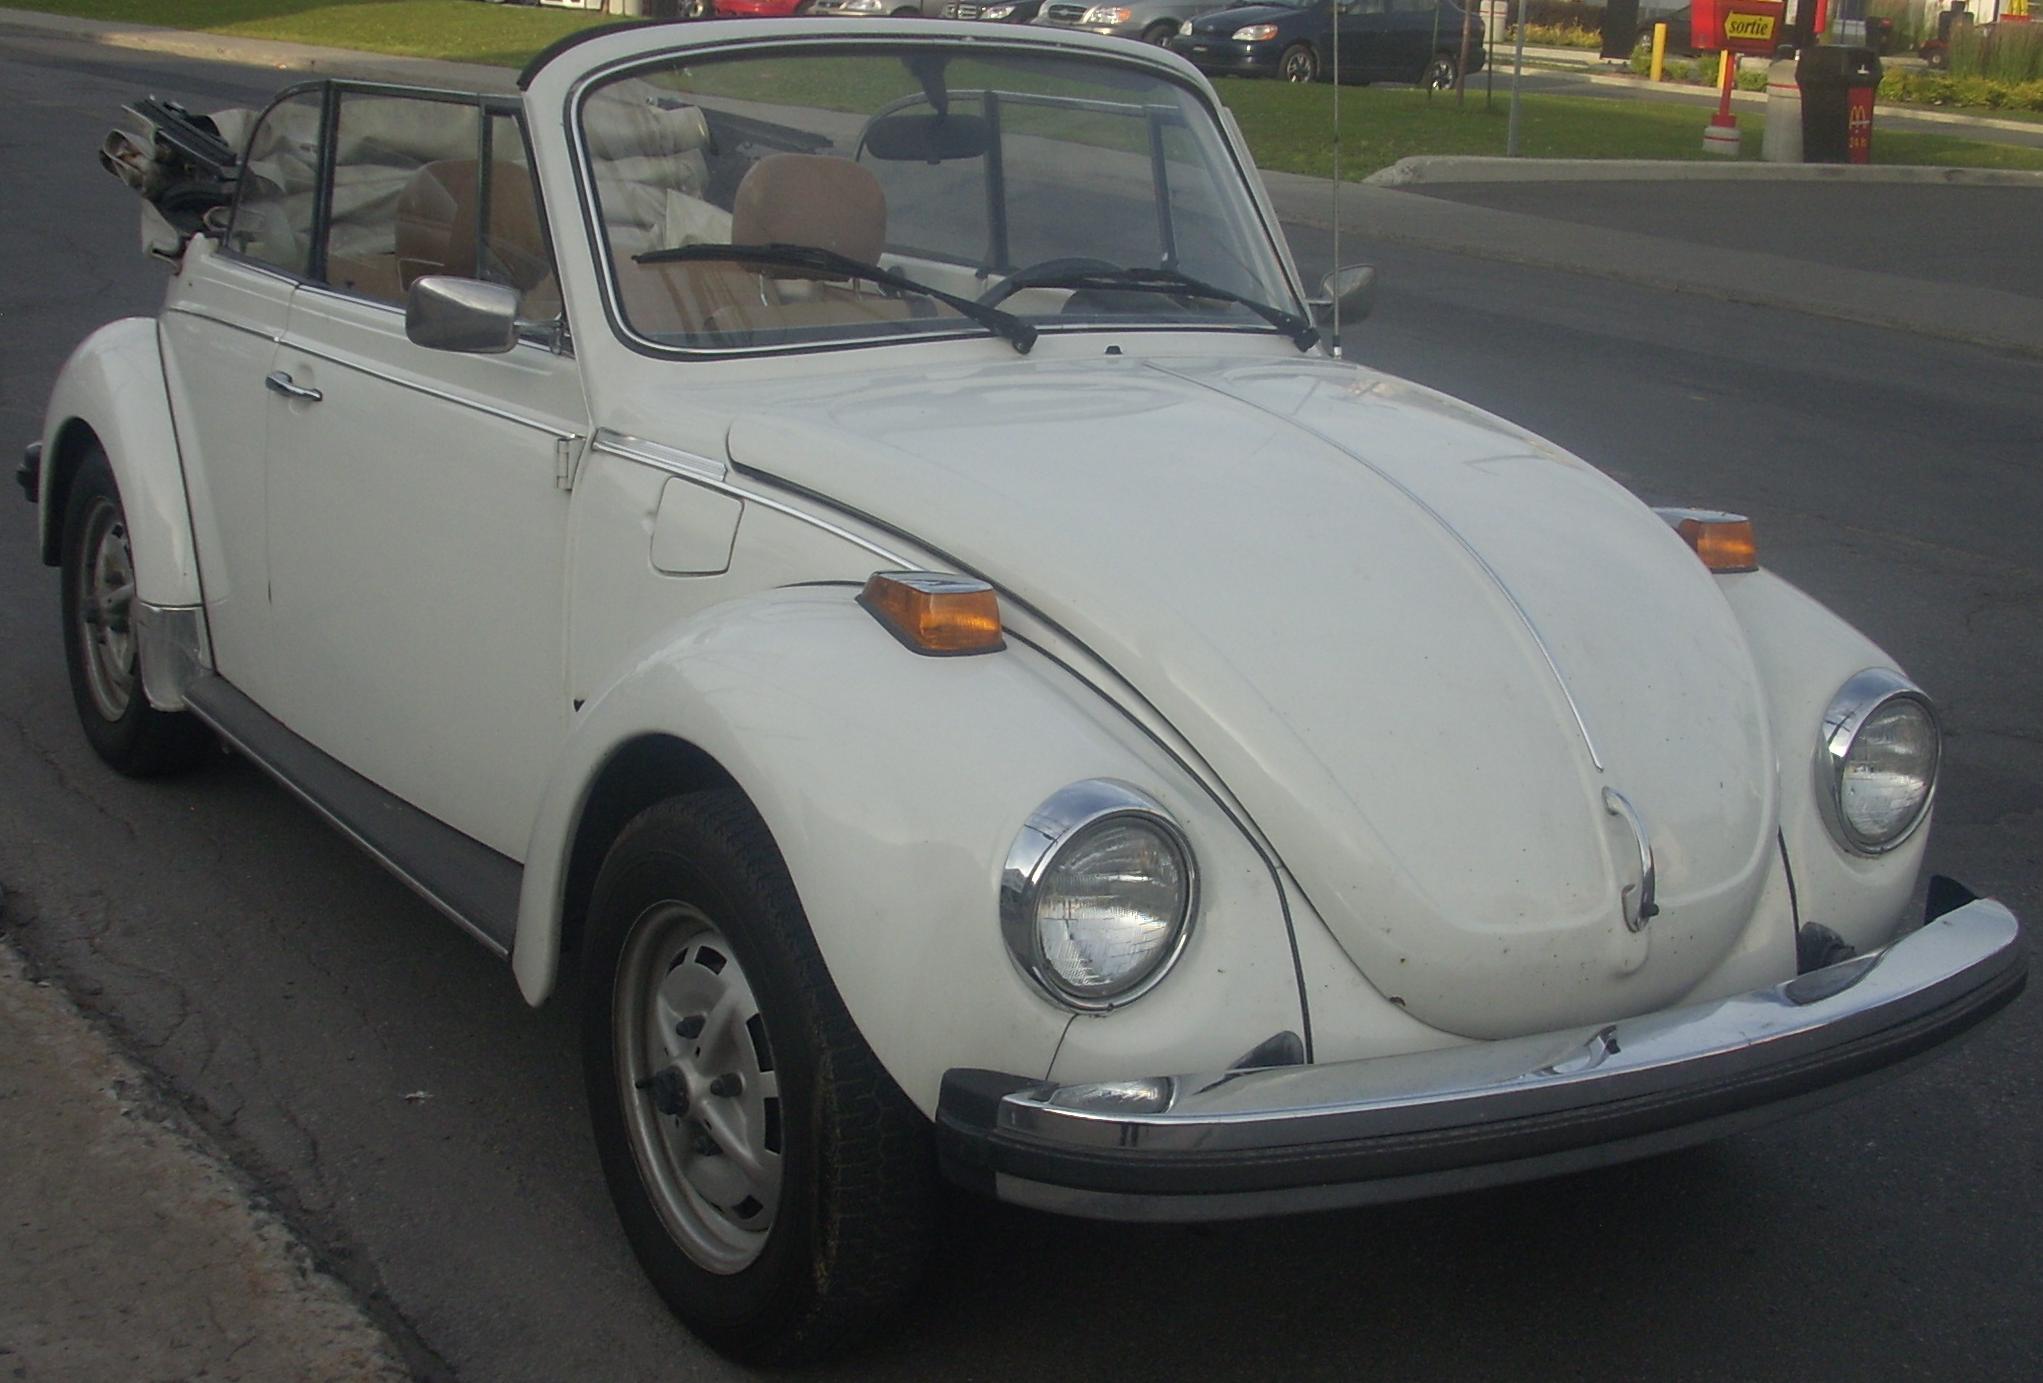 Volkswagen Type 1 Beetle Convertible